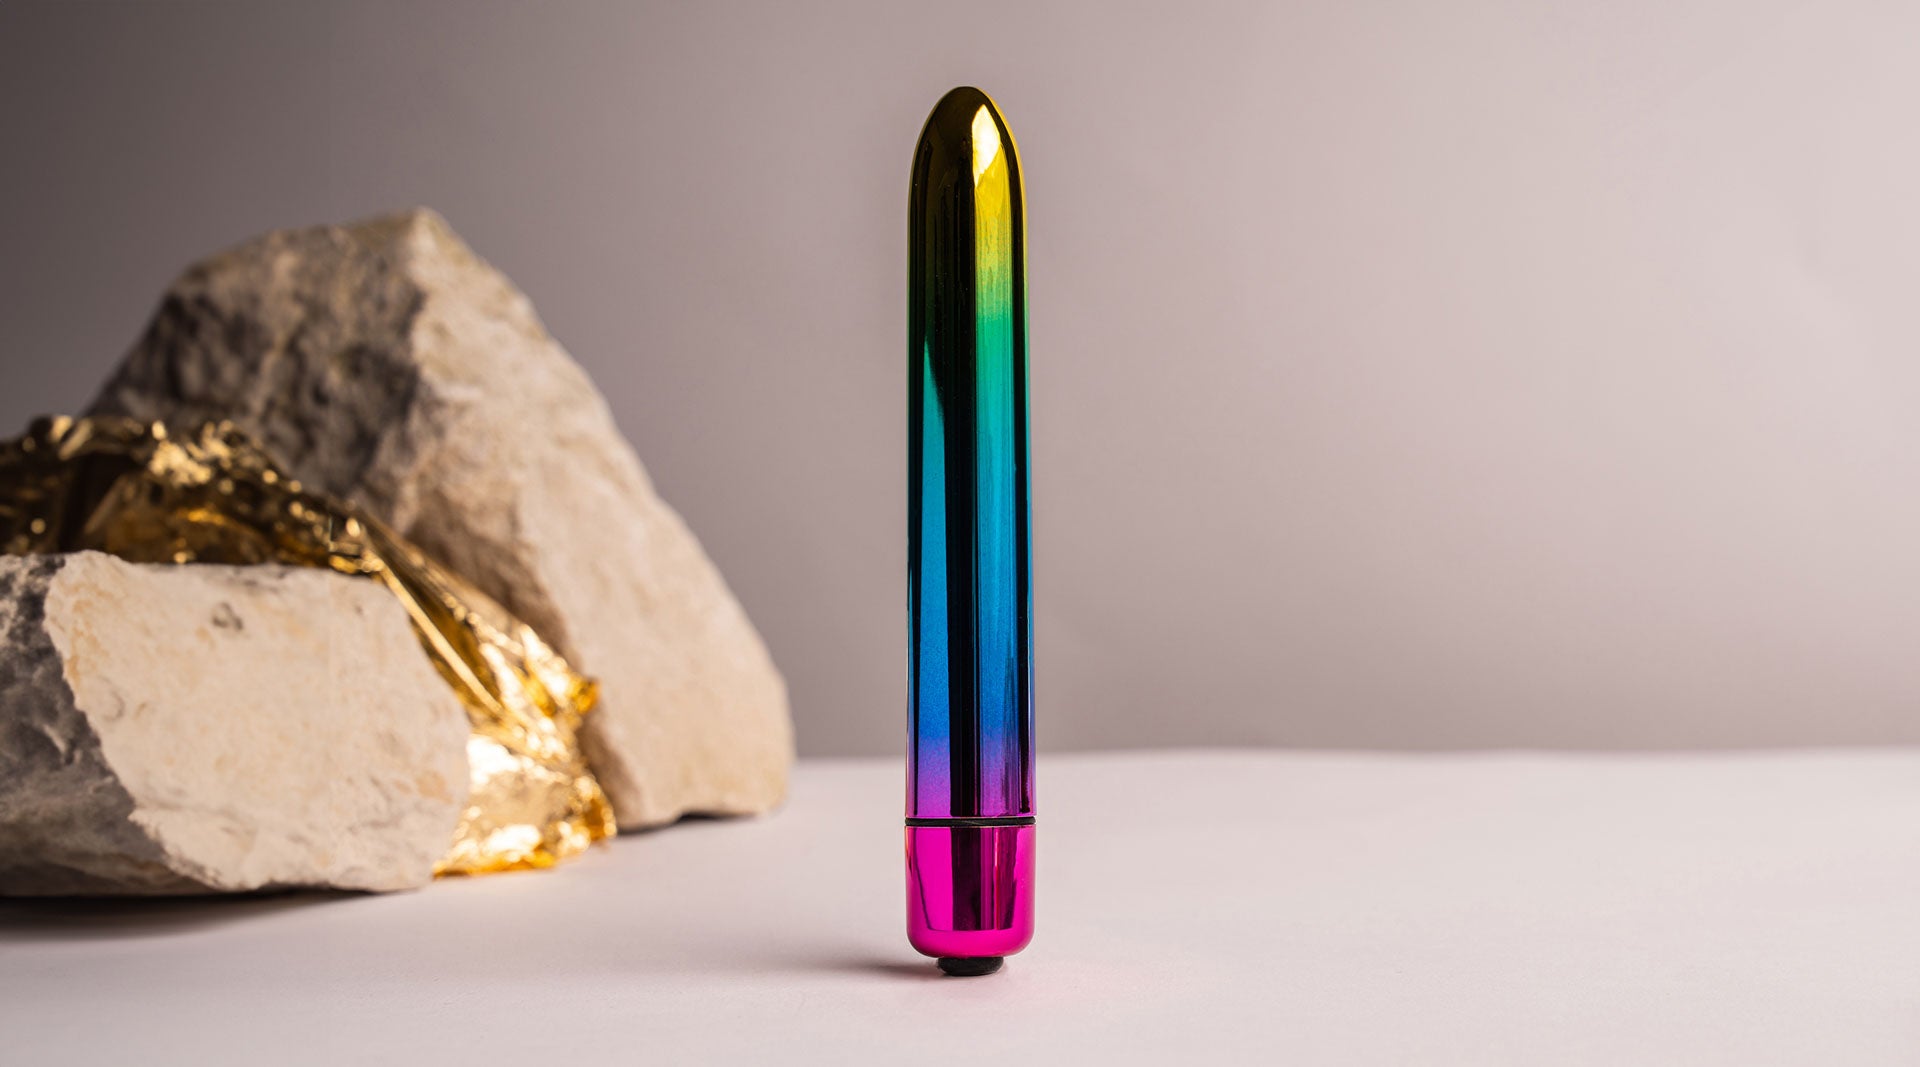 Medium sized insertable bullet vibrator in rainbow chrome colour.